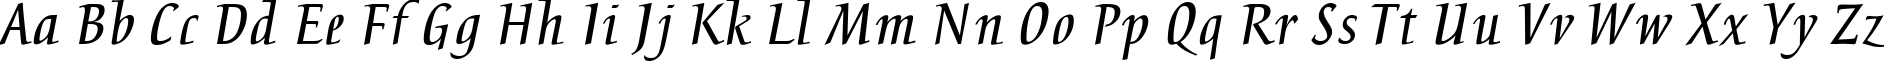 Пример написания английского алфавита шрифтом Breeze